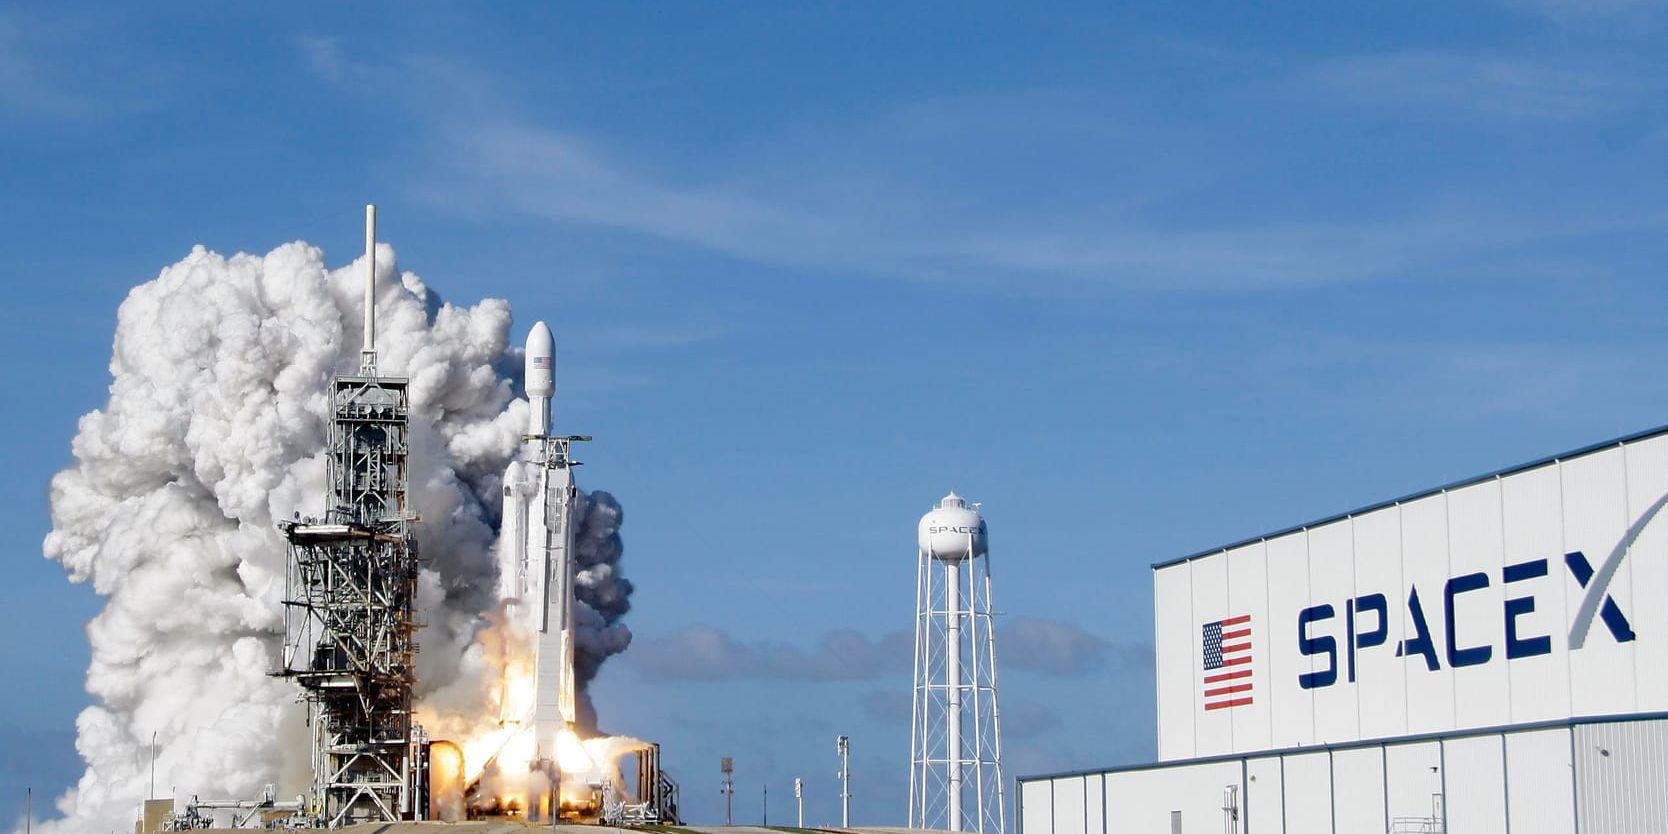 Efter den lyckade uppskjutningen av jätteraketen Falcon 9 från Kennedy Space Center i Florida den 6 februari går Spacex vidare med sitt projekt med internet från rymden.